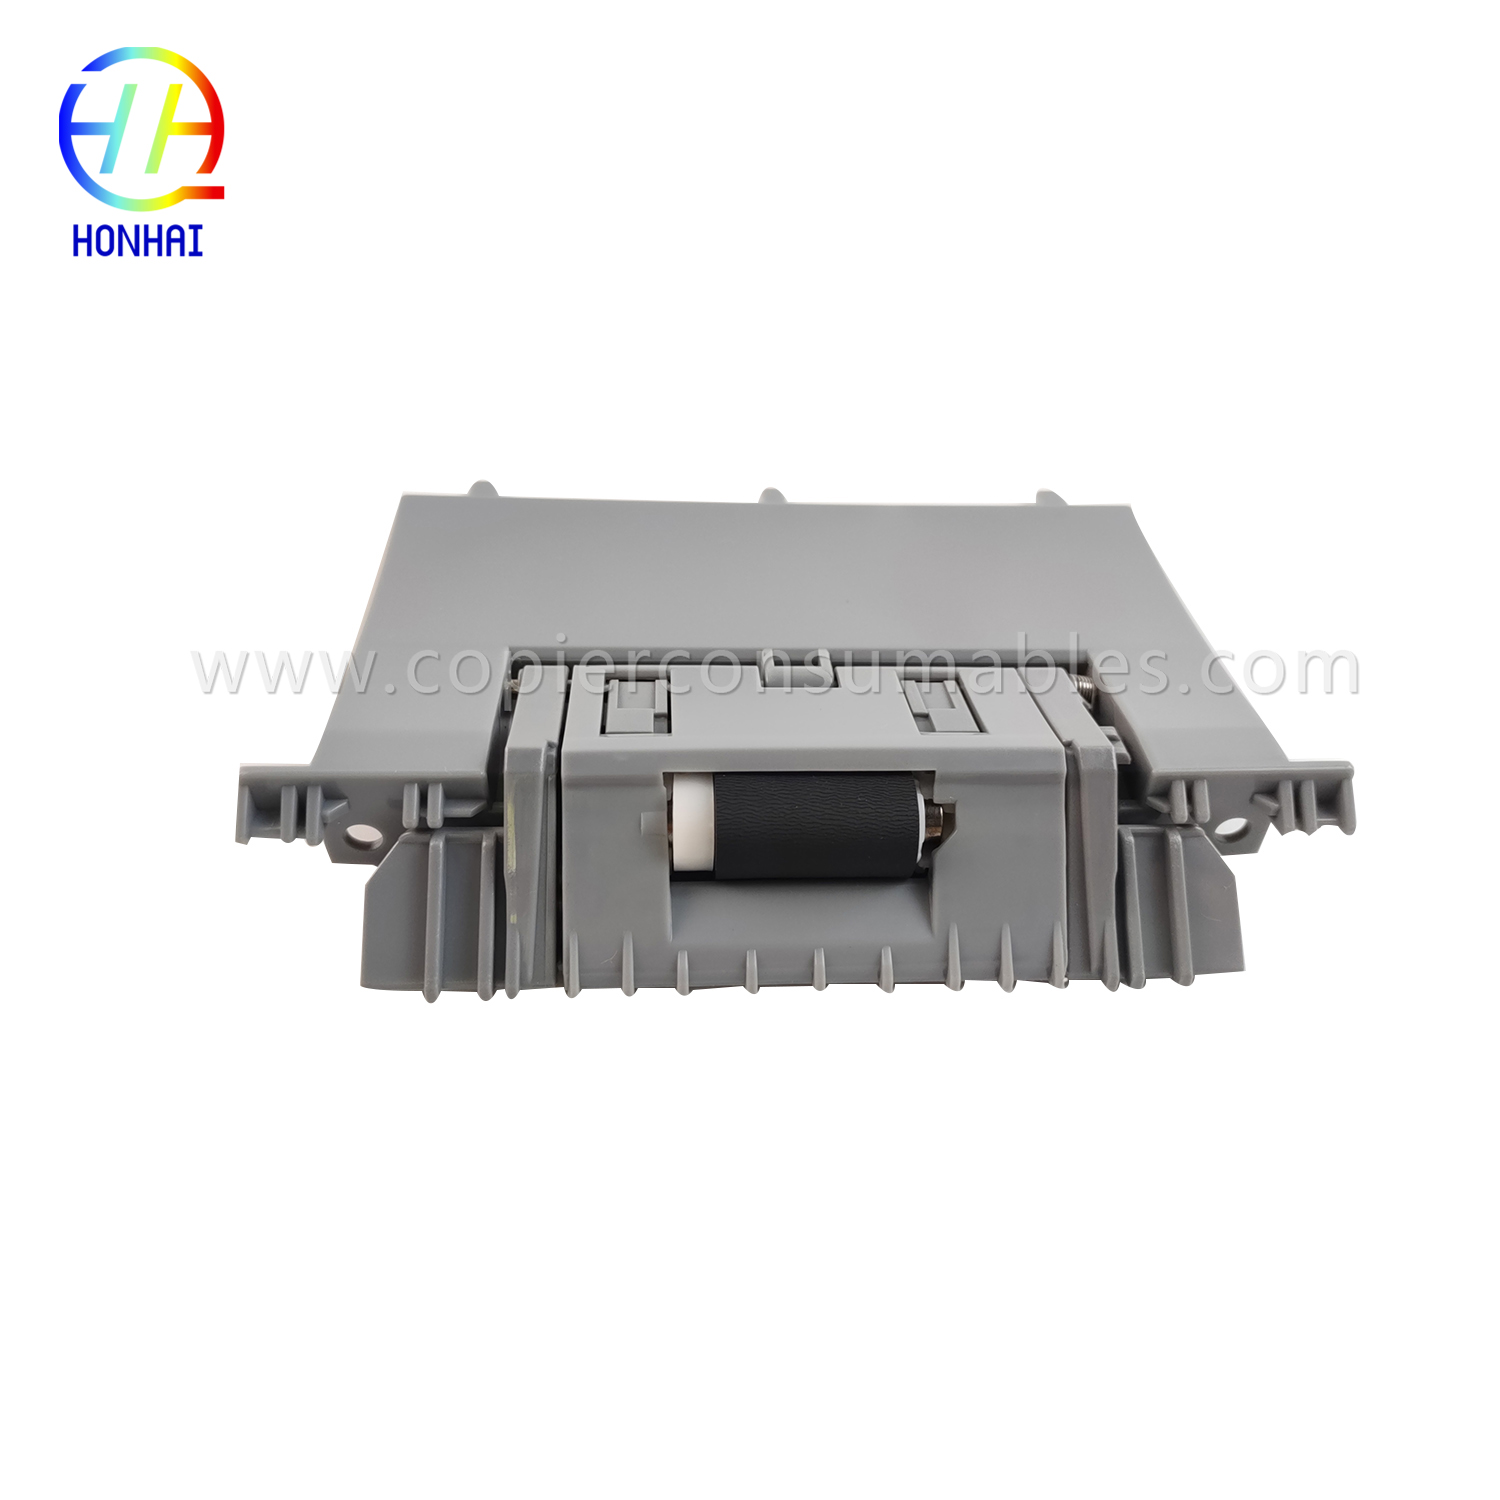 علبة تجميع أسطوانة الفصل لطابعة HP LaserJet Enterprise 500 Color M551dn RM1-8129-000CN(2)